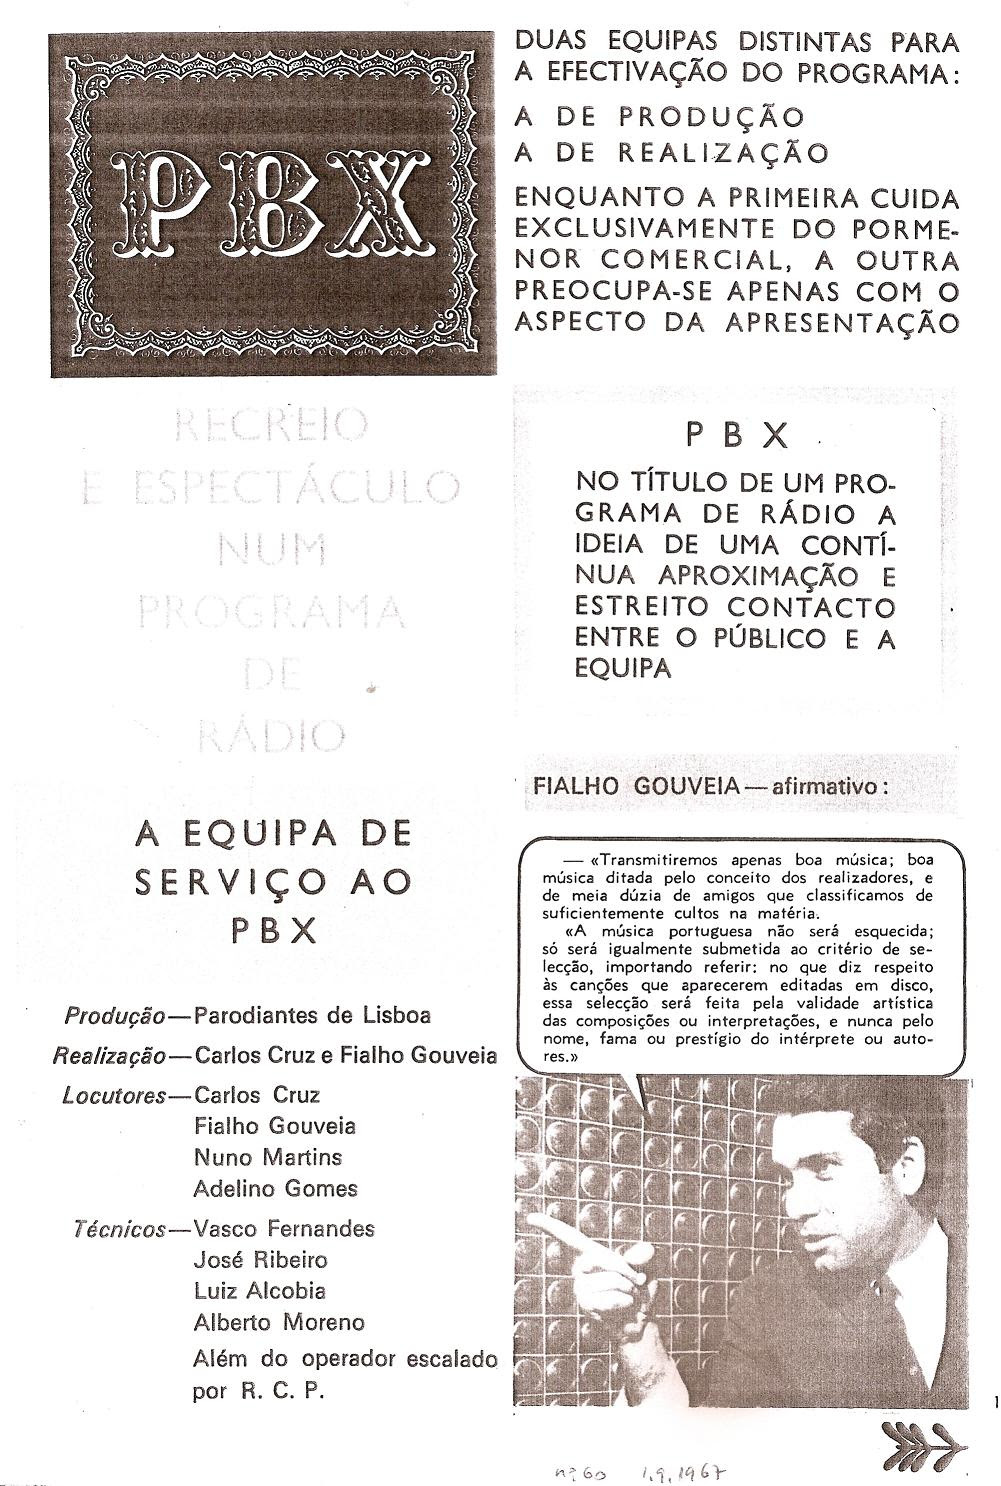 FG (Antena, 1.9.1967, nº 60)